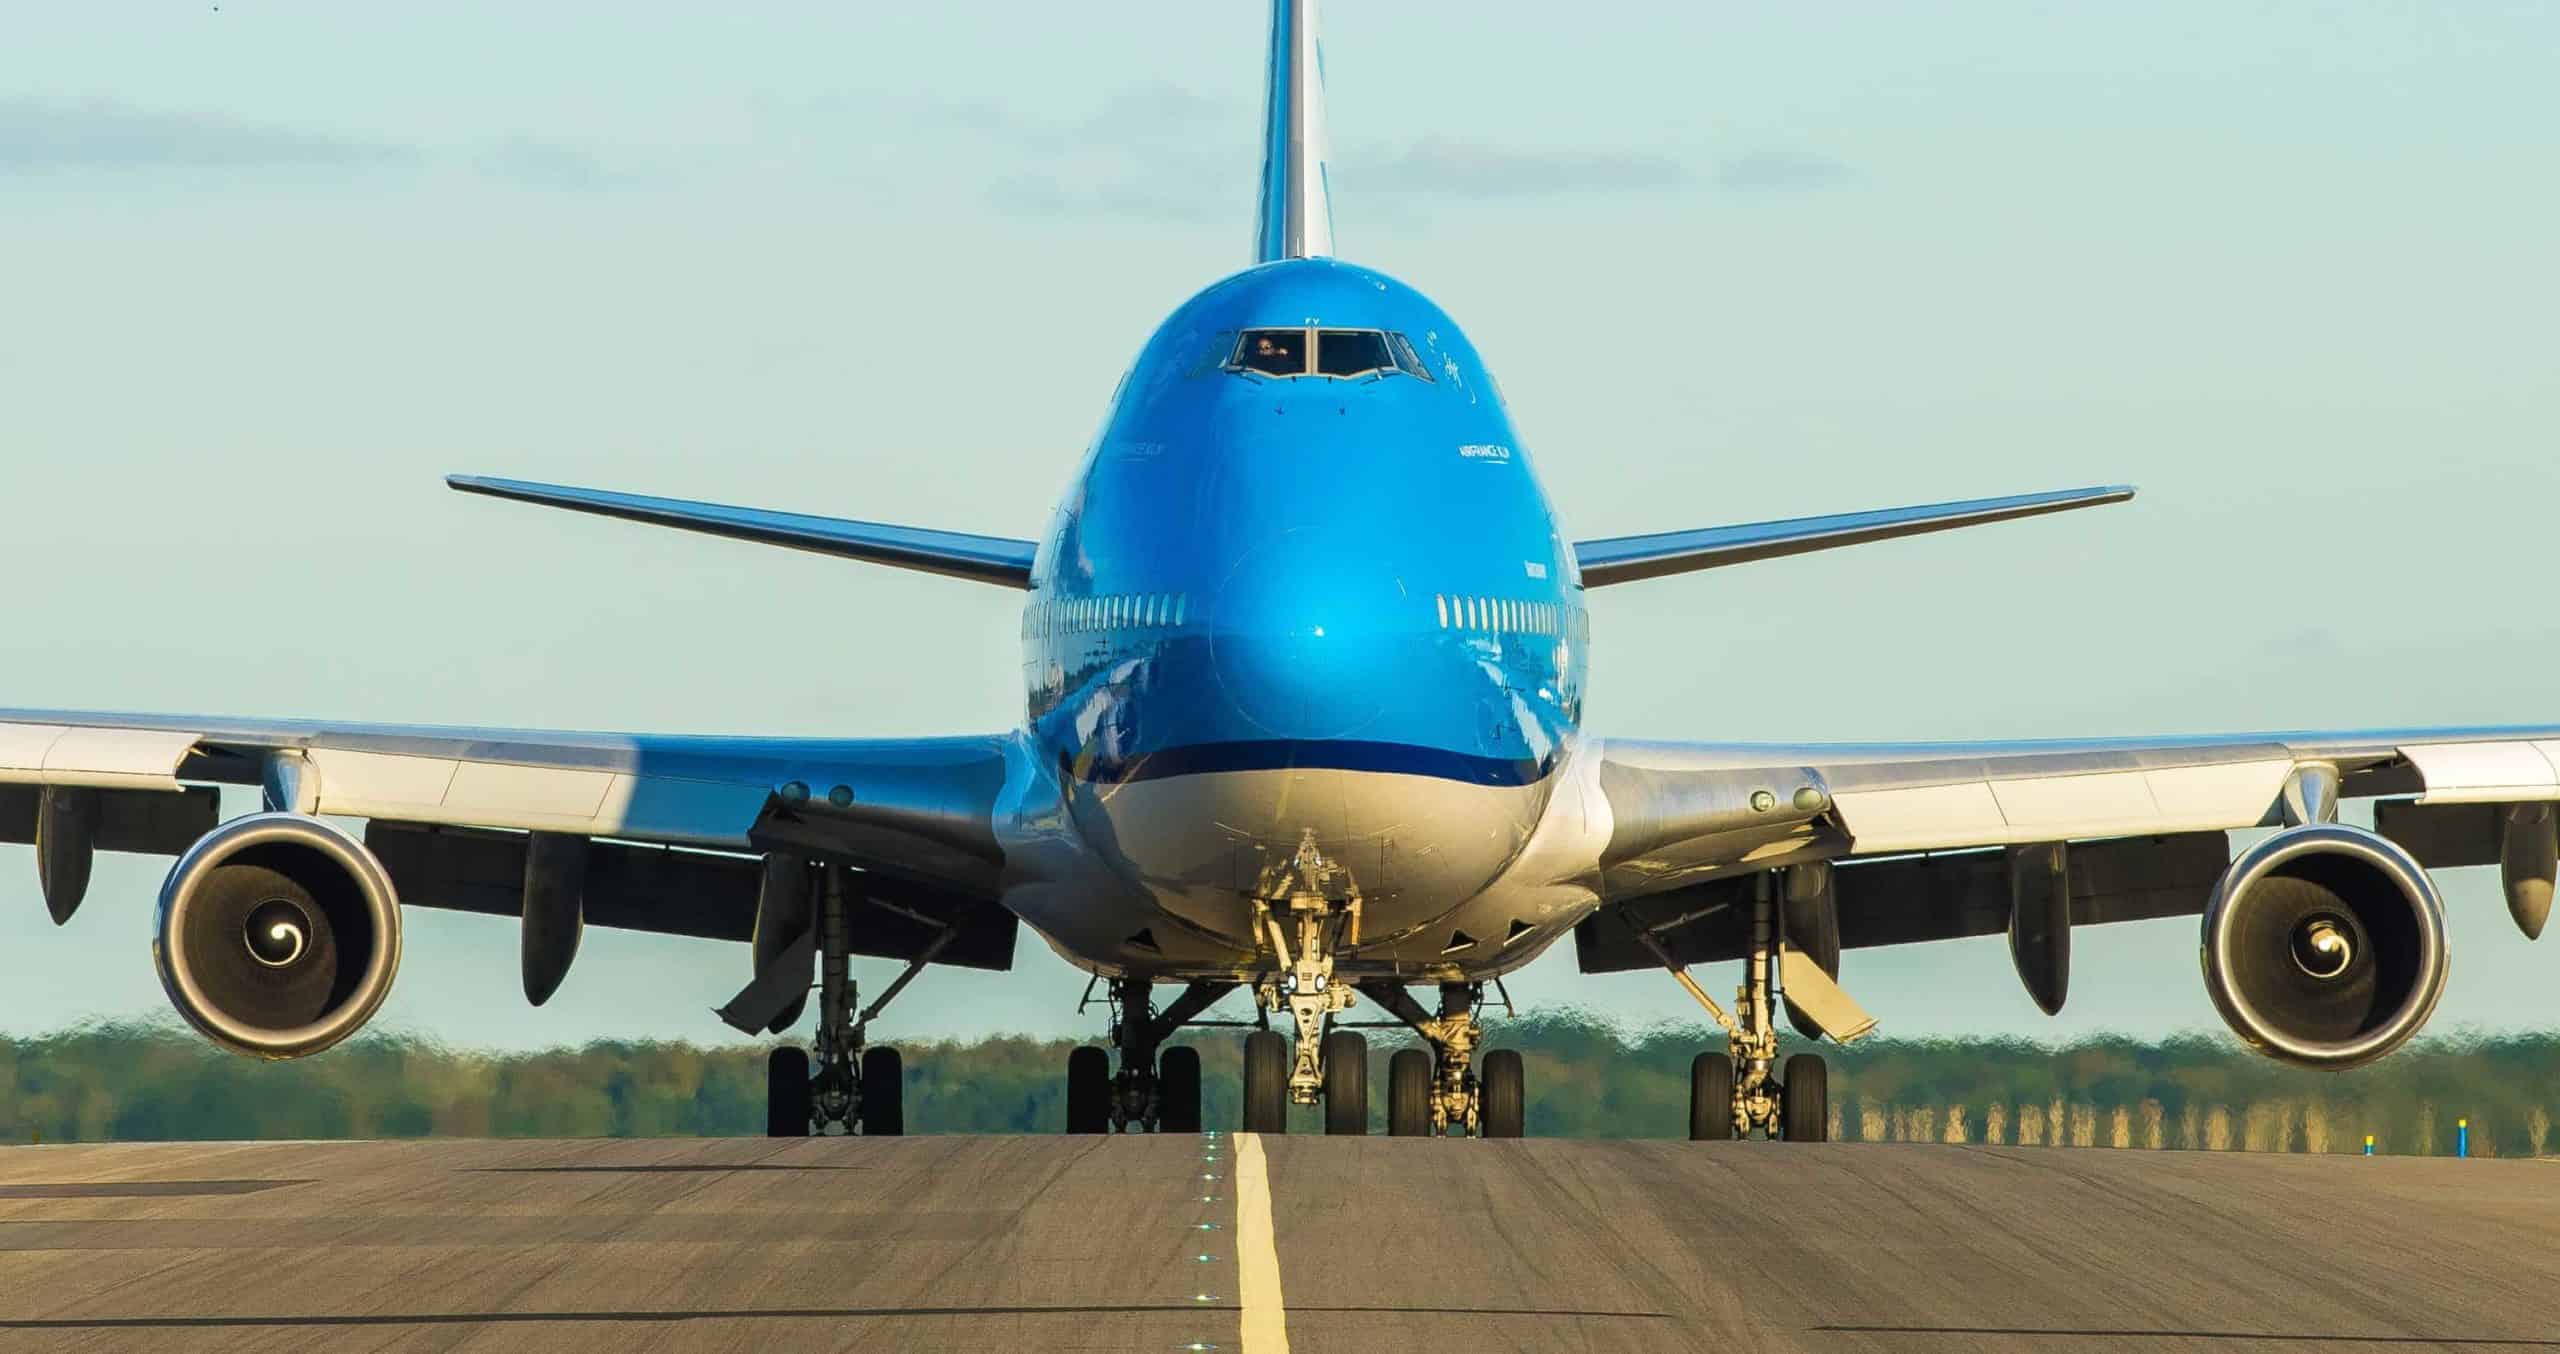 KLM Vliegtuig op start en landingsbaan